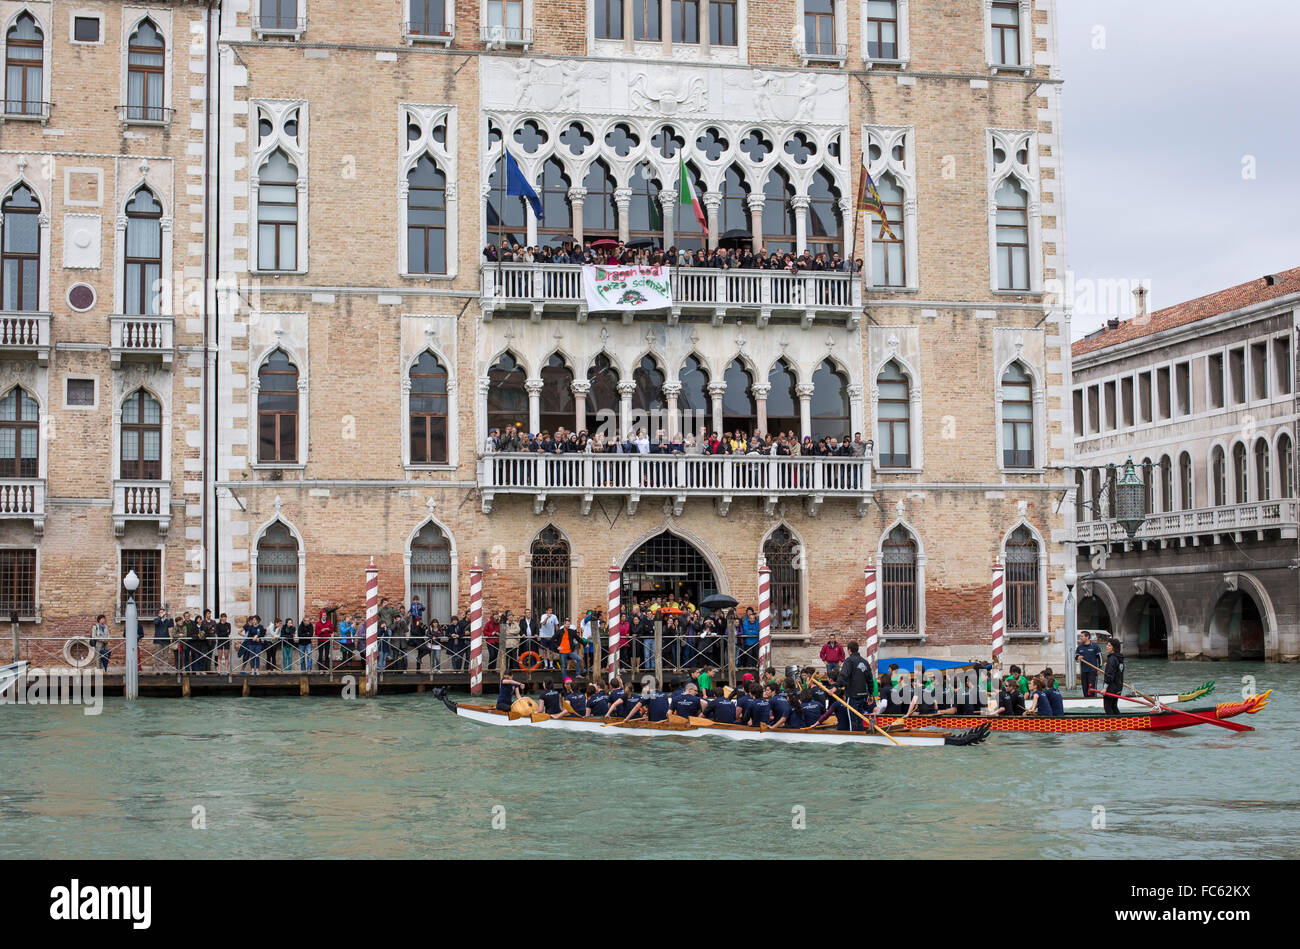 Rowing teams at Ca' Foscari university, Grand Canal, Venice, Italy Stock Photo